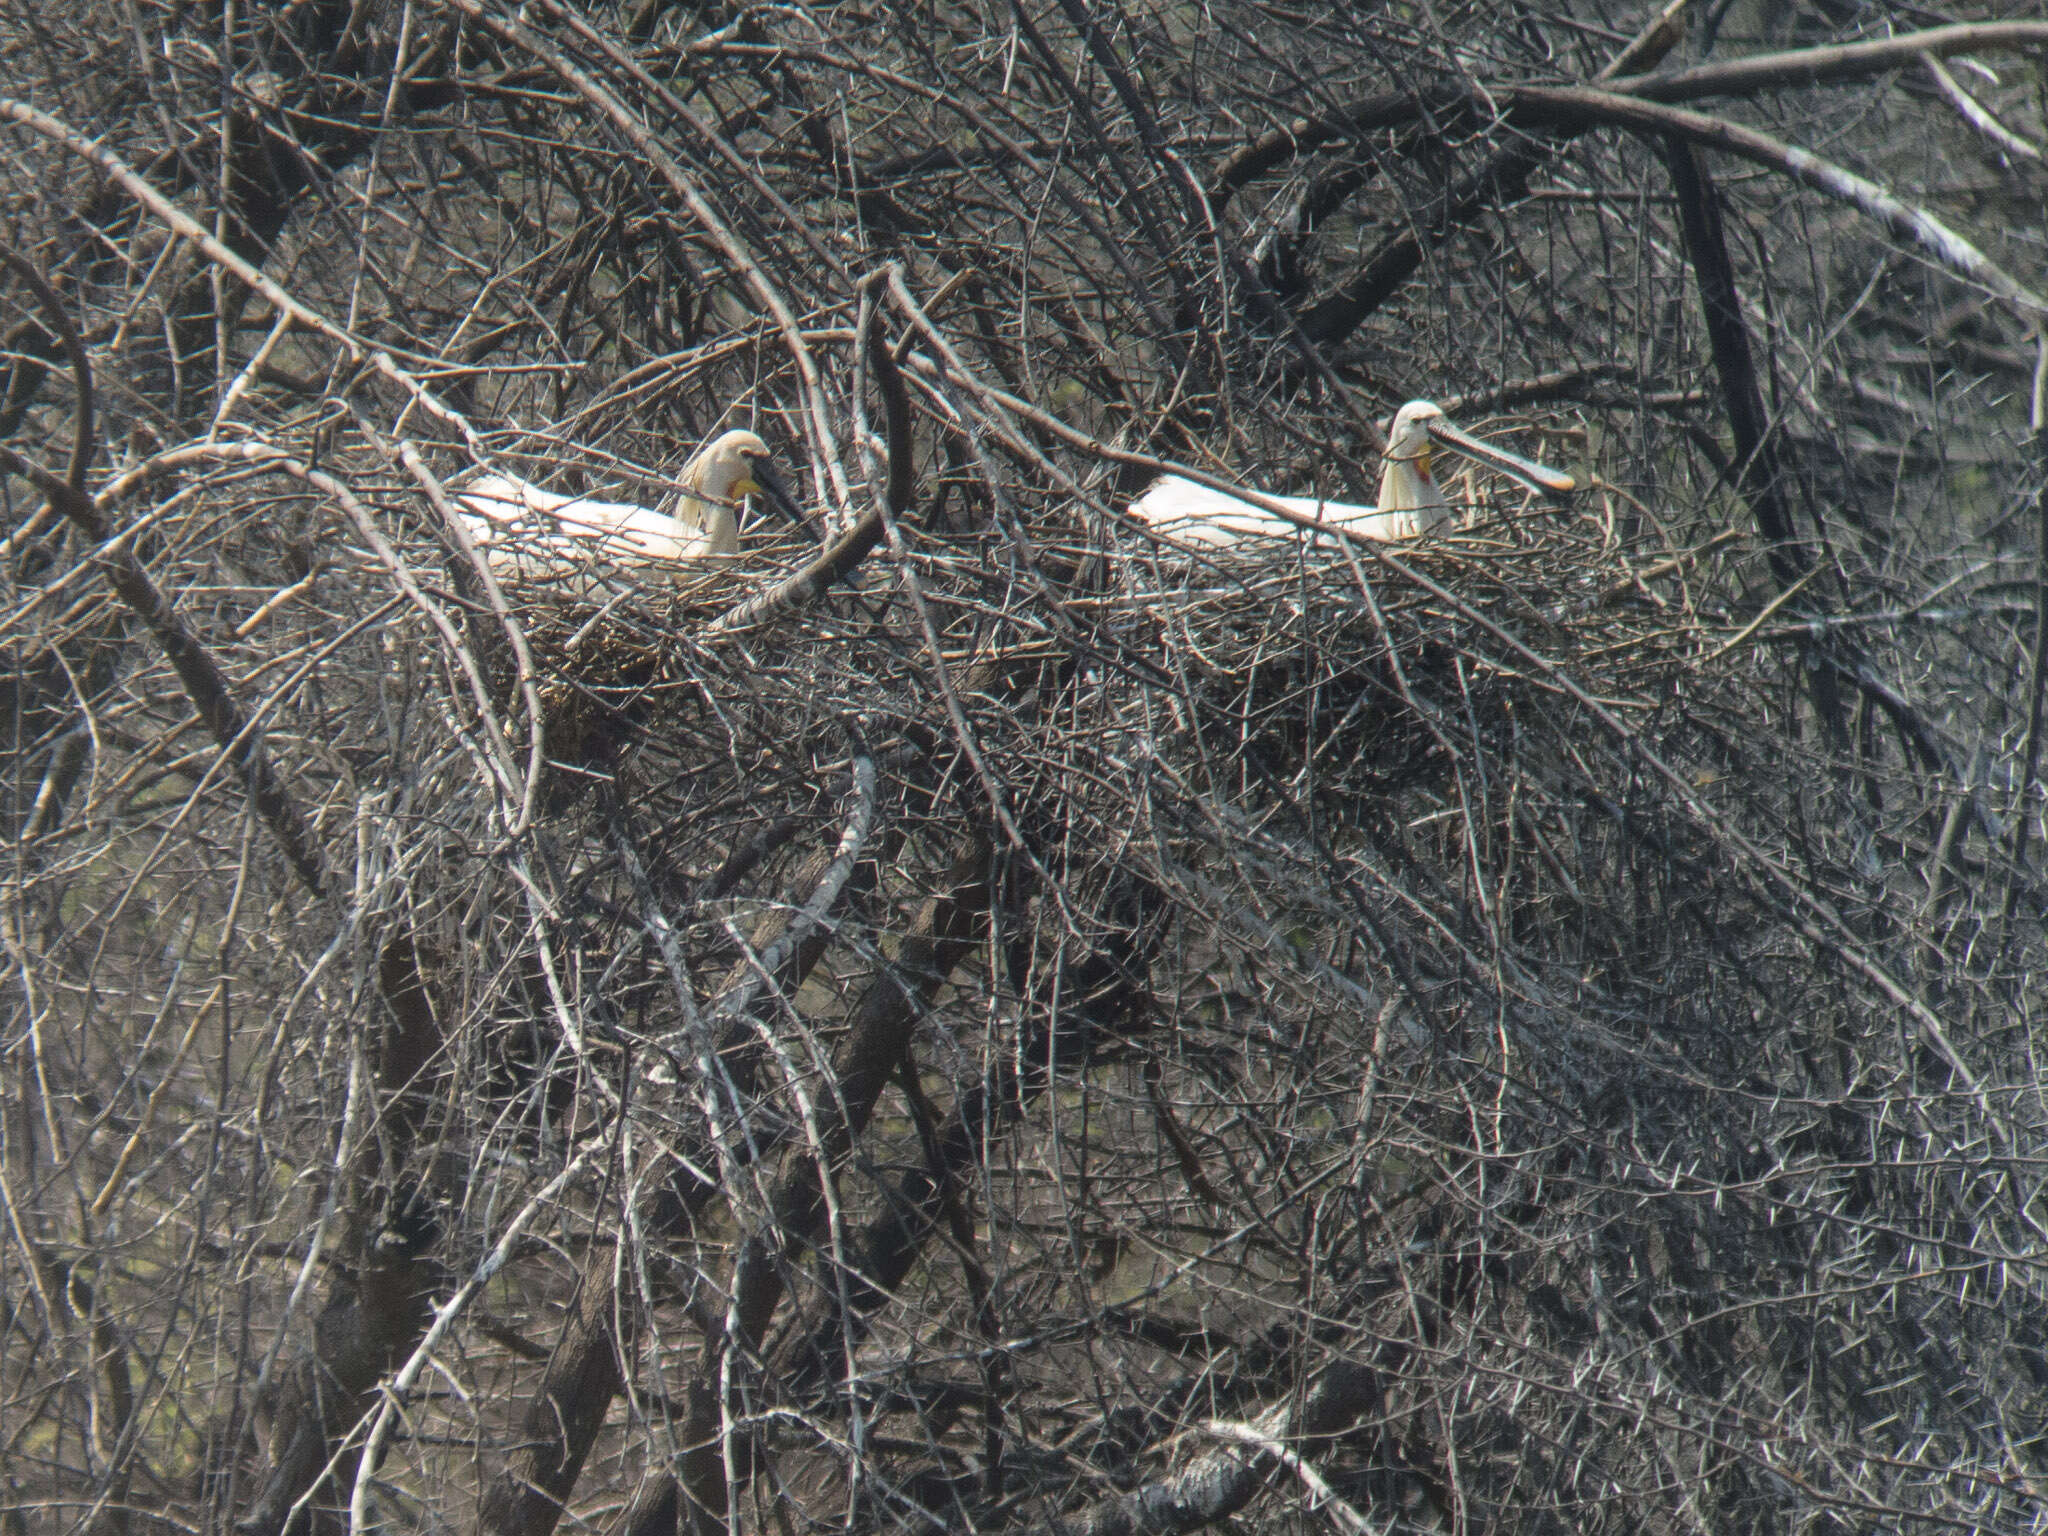 Image of spoonbill, eurasian spoonbill